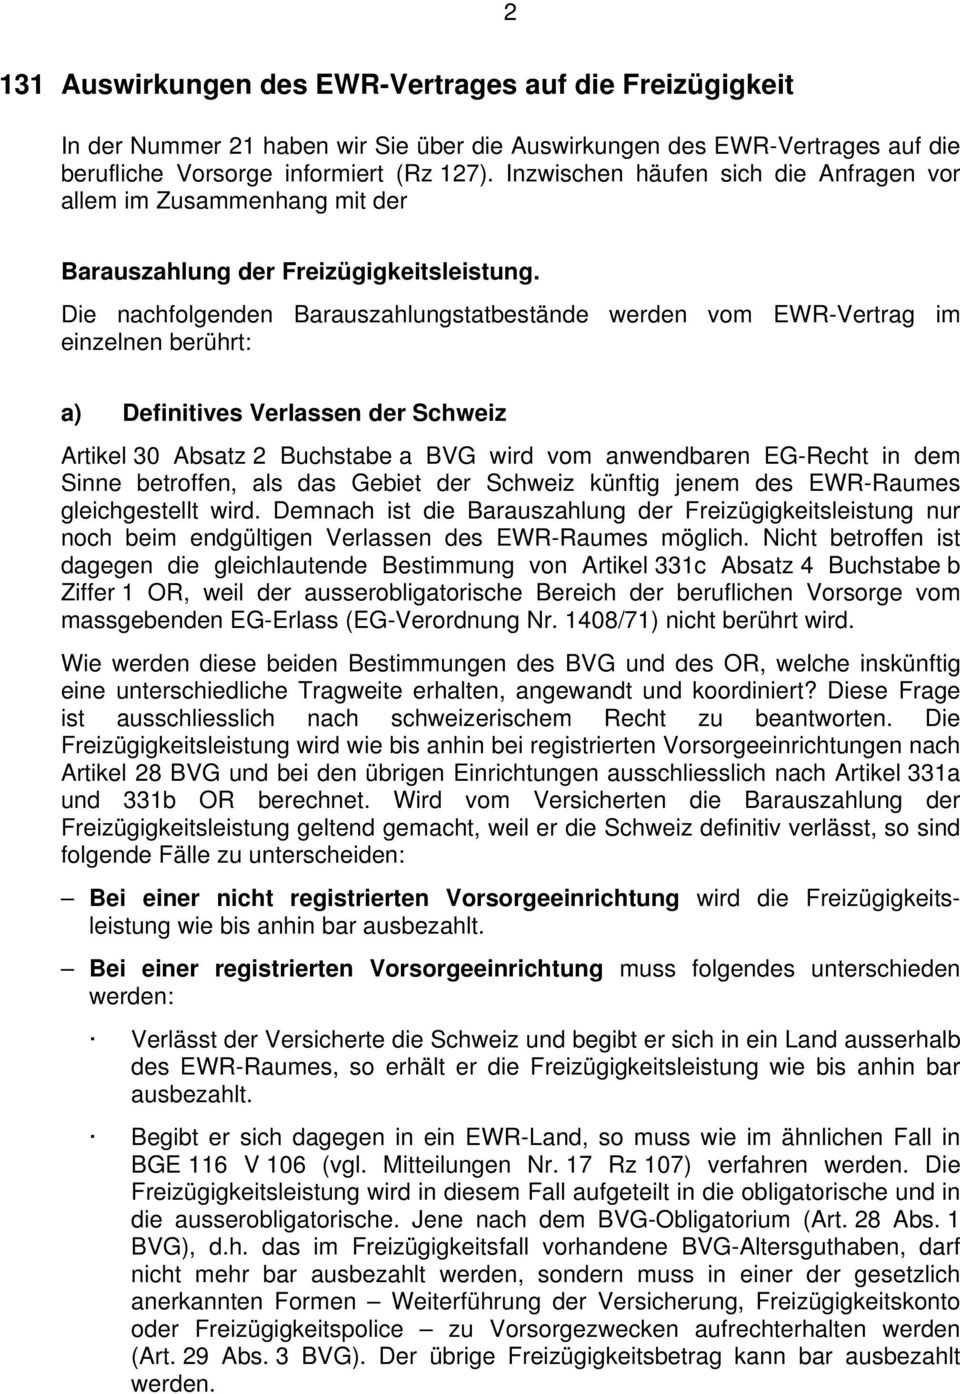 Die nachfolgenden Barauszahlungstatbestände werden vom EWR-Vertrag im einzelnen berührt: a) Definitives Verlassen der Schweiz Artikel 30 Absatz 2 Buchstabe a BVG wird vom anwendbaren EG-Recht in dem